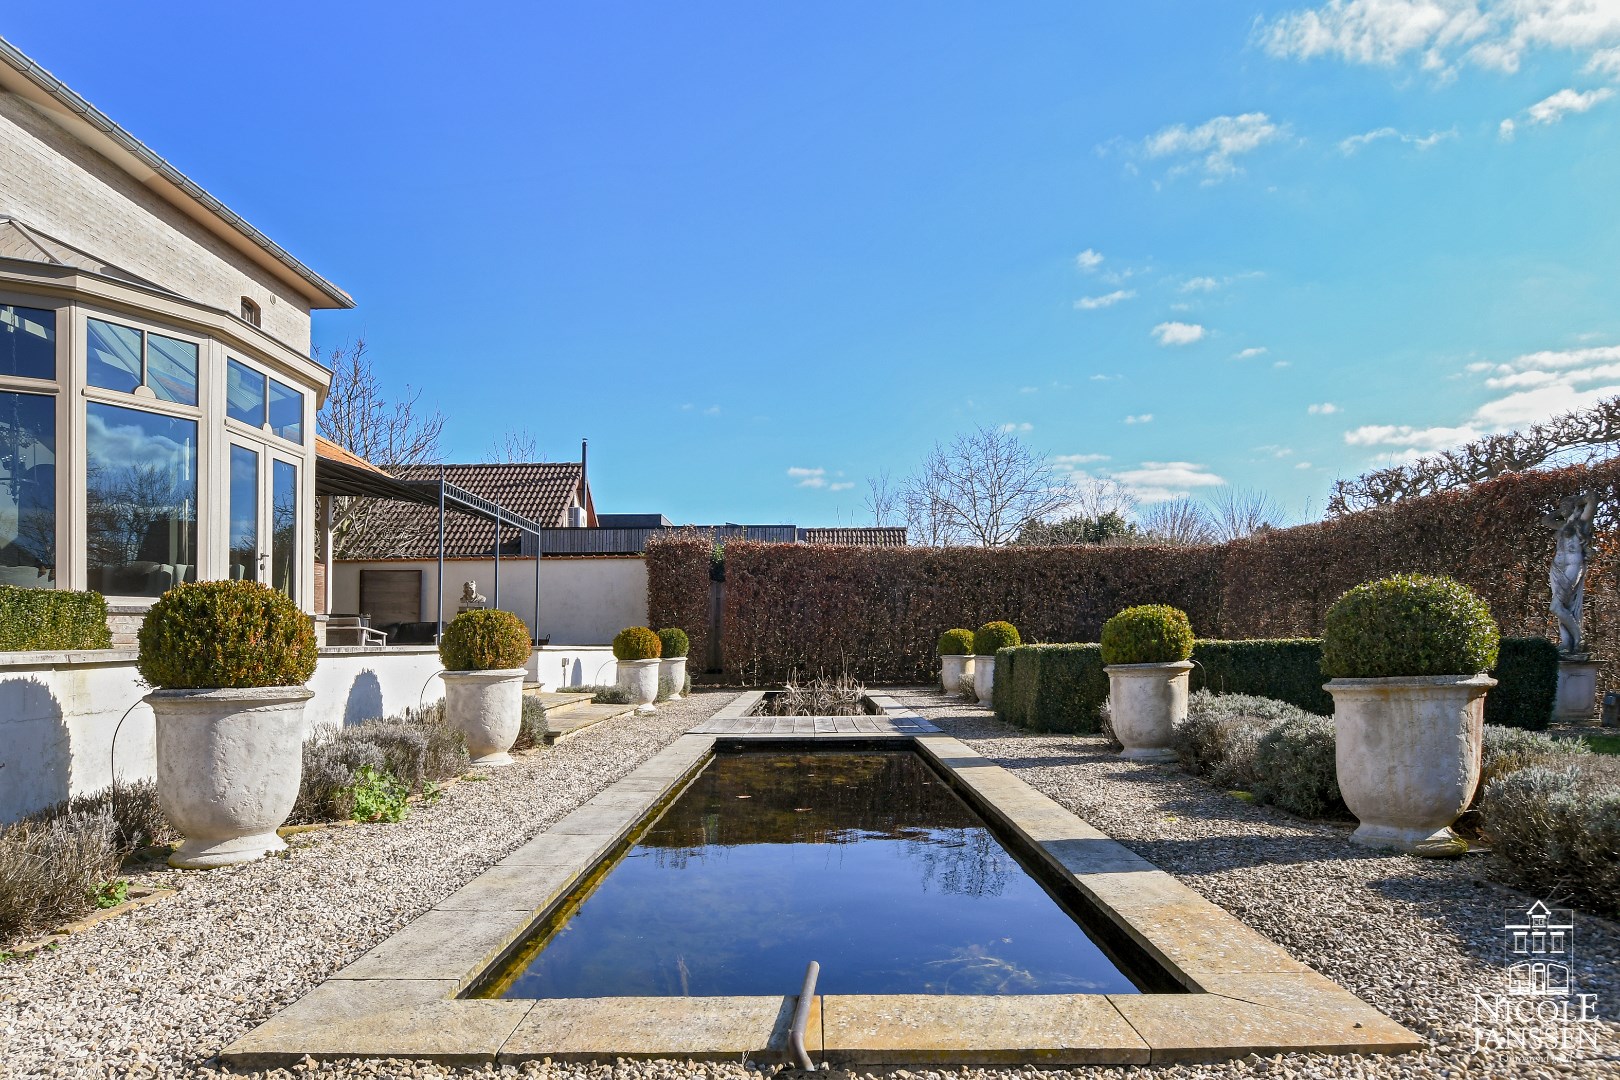 Degelijk afgewerkte en instapklare villa met mooi aangelegde tuin nabij het centrum 